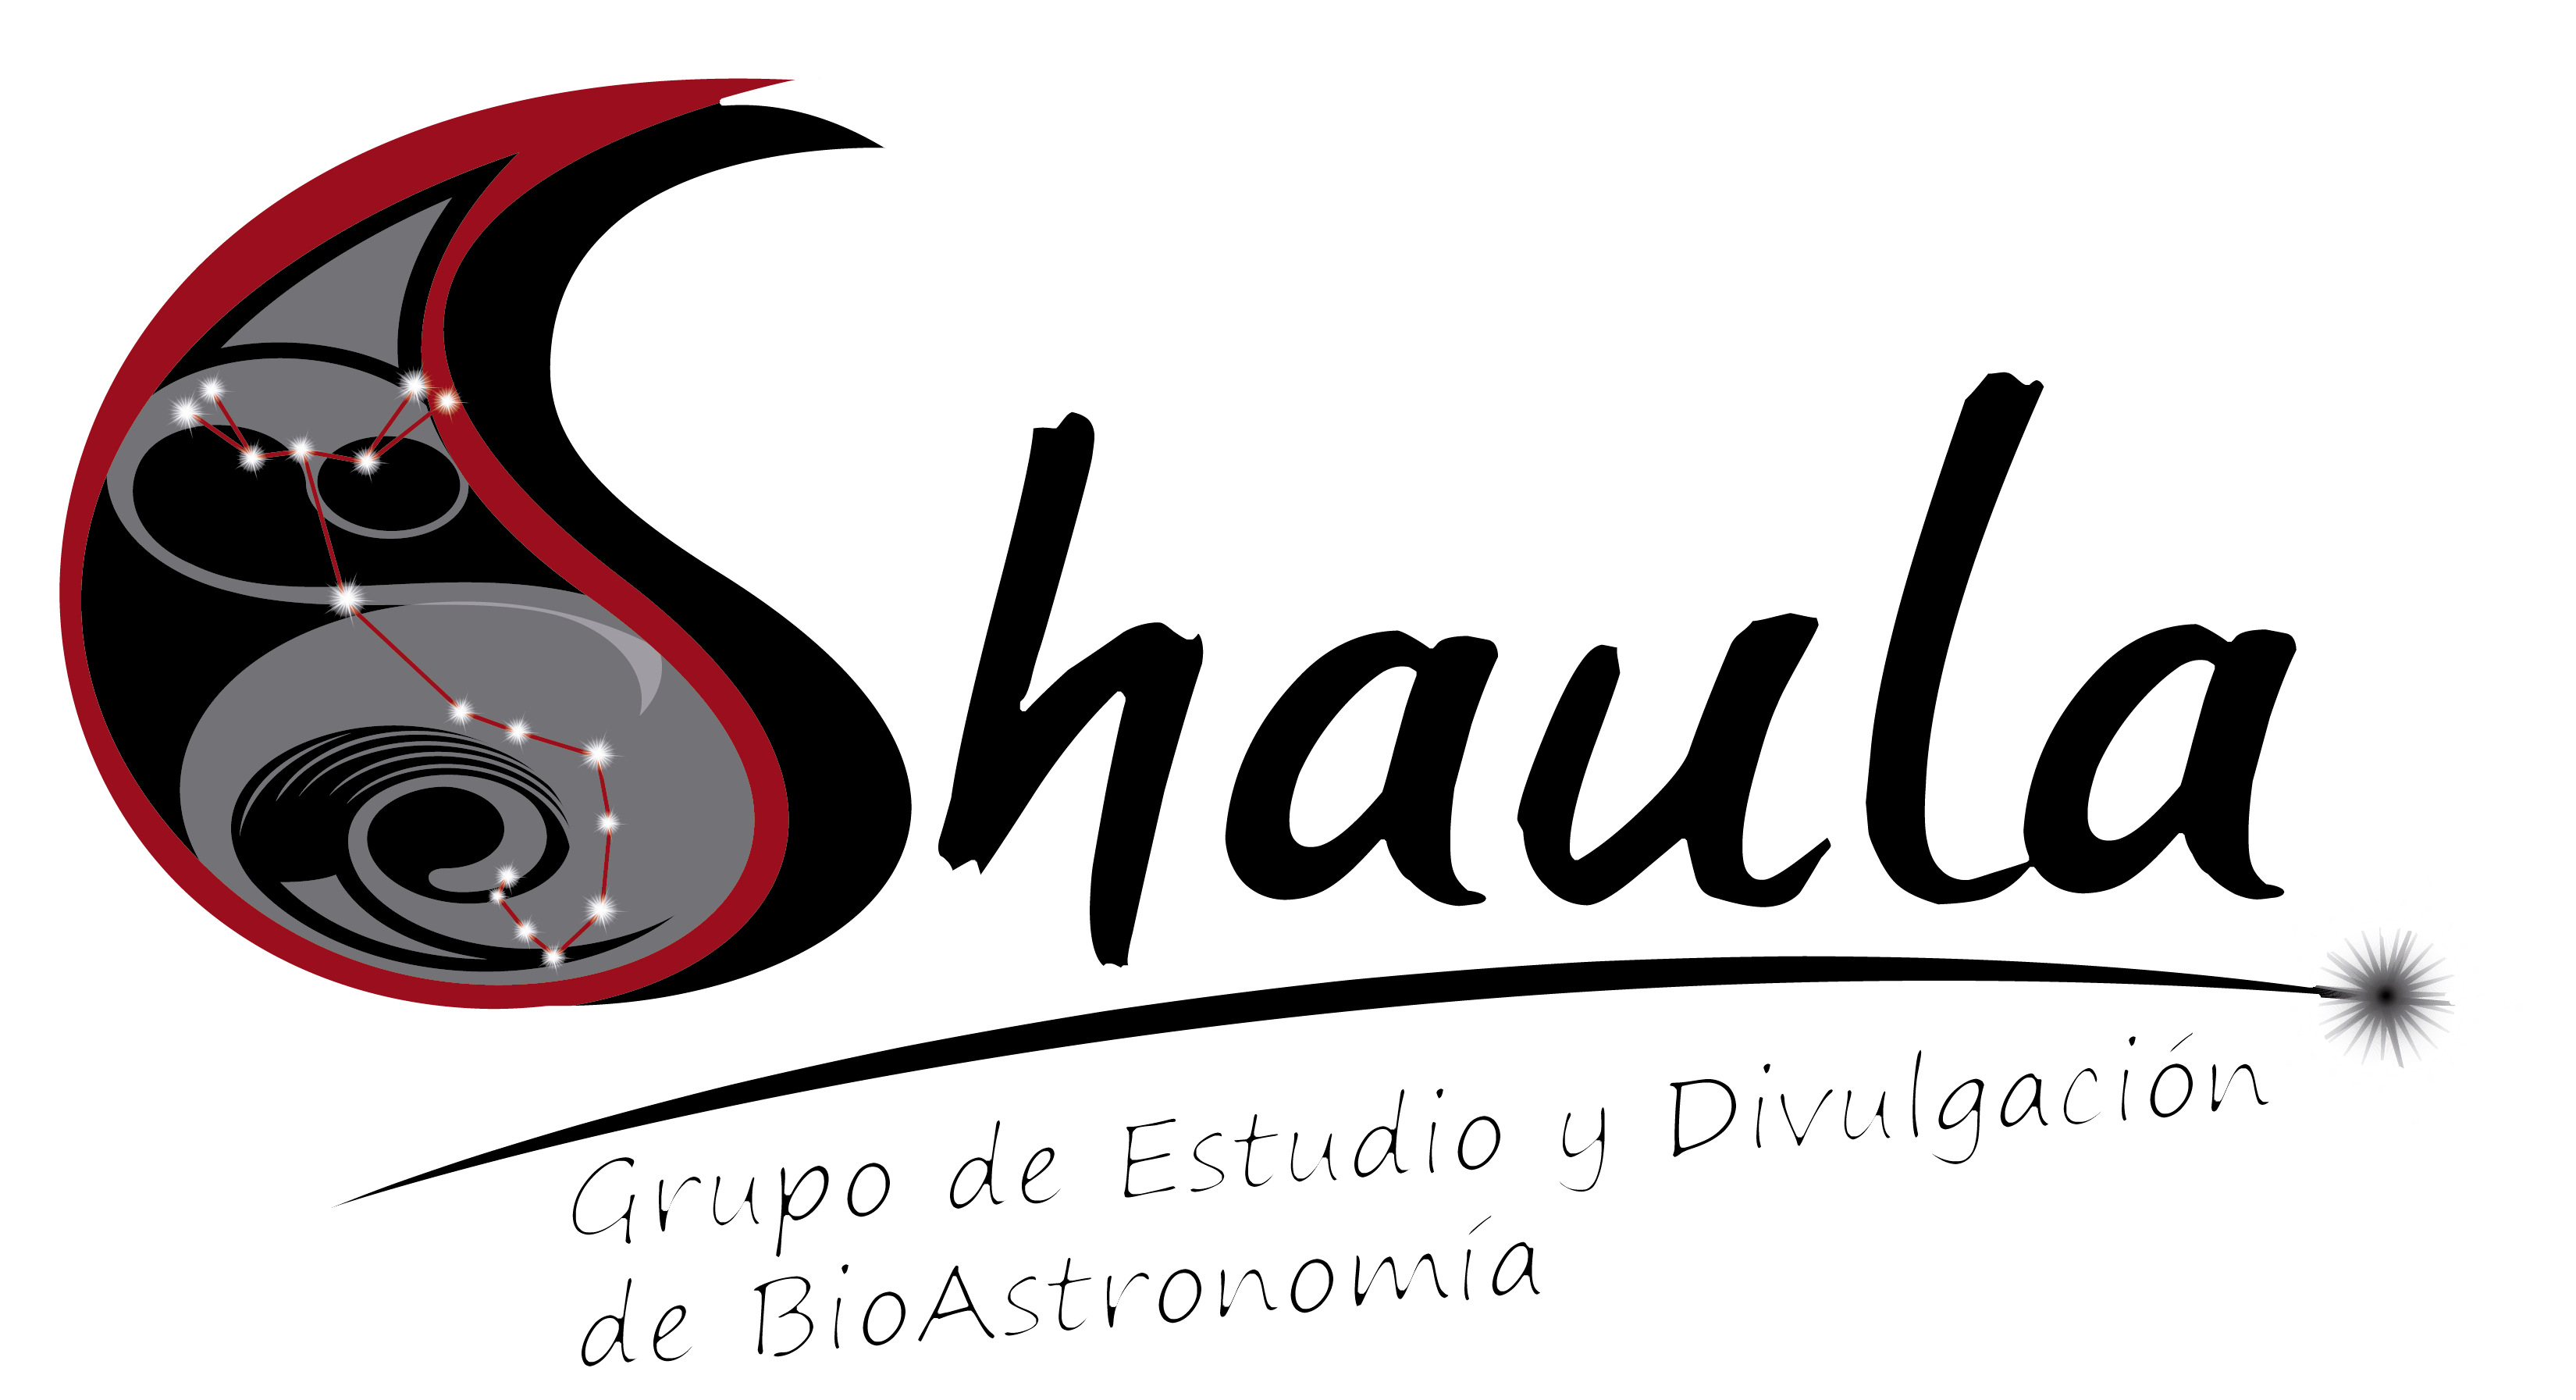 Grupo de BioAstronomía Shaula